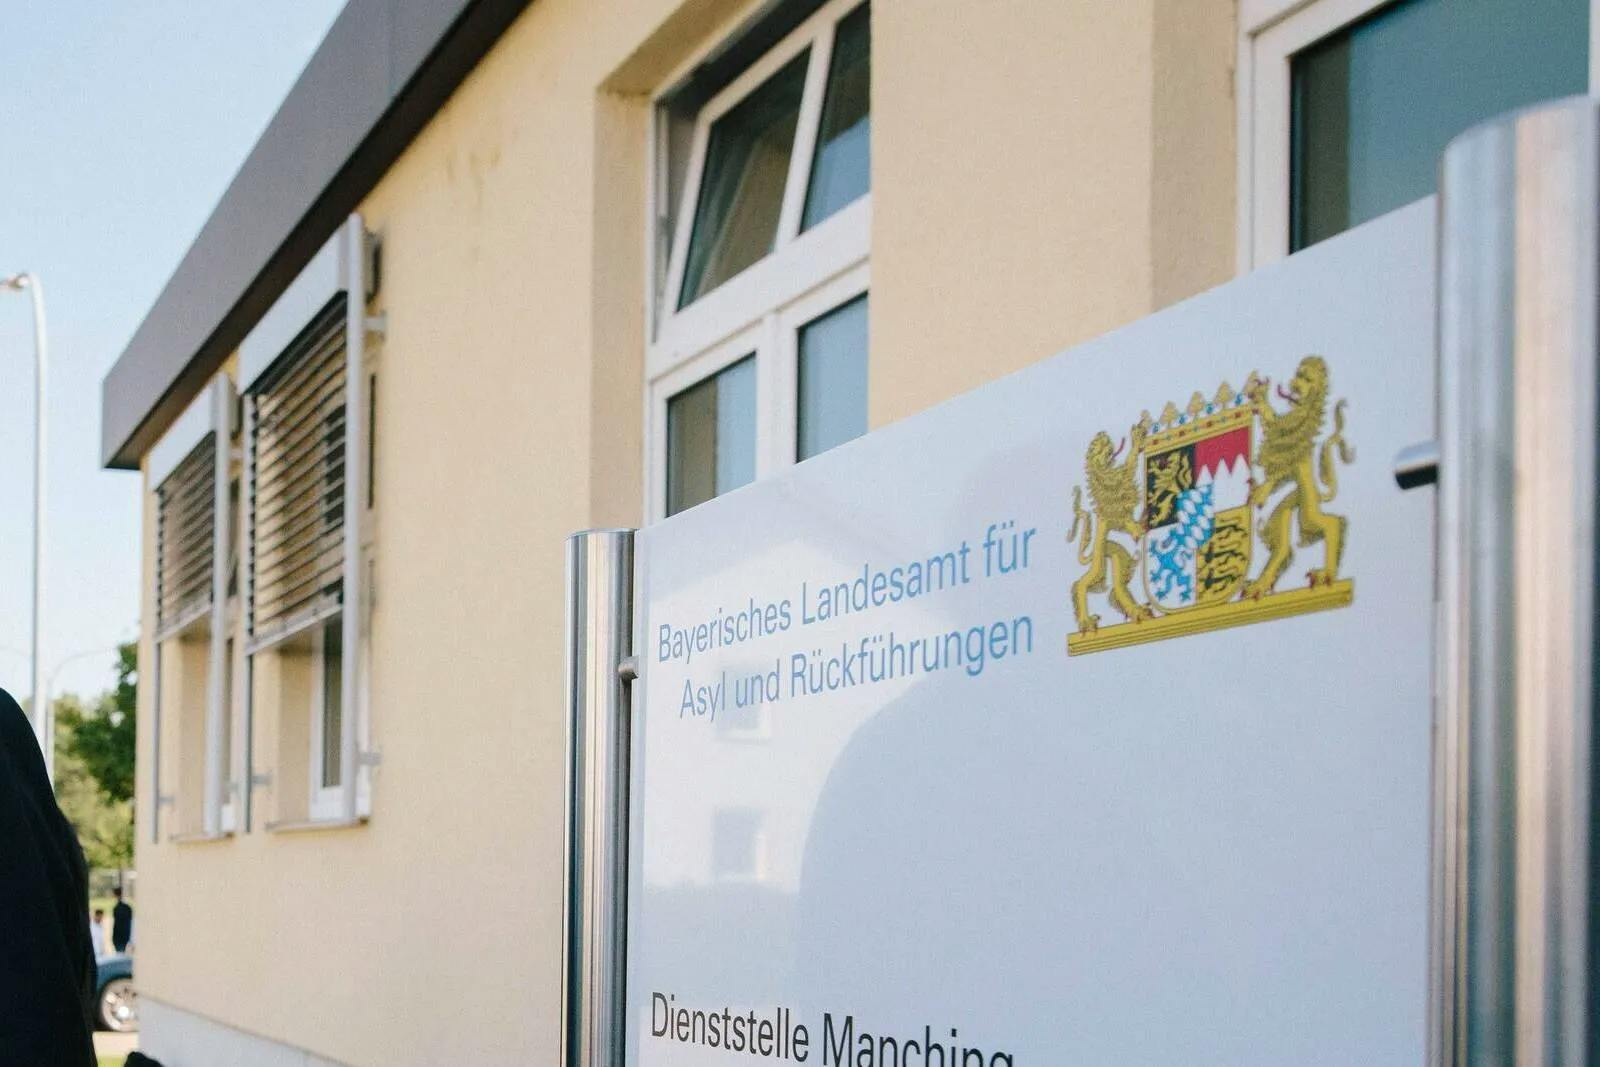 Trotz der bestehenden 5.000: Weitere Asylunterkünfte in Bayern geplant